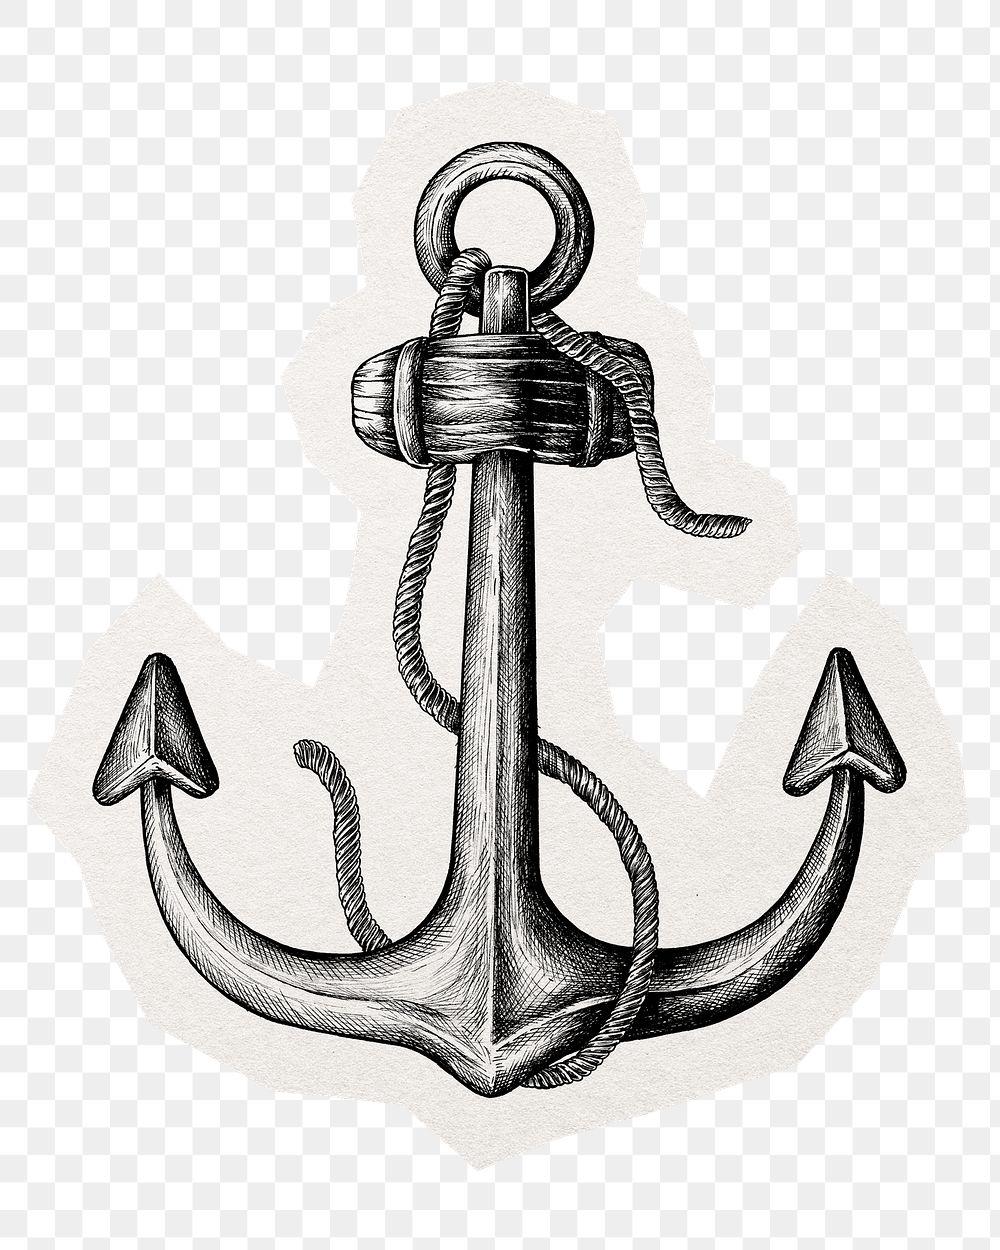 PNG vintage anchor illustration sticker, transparent background